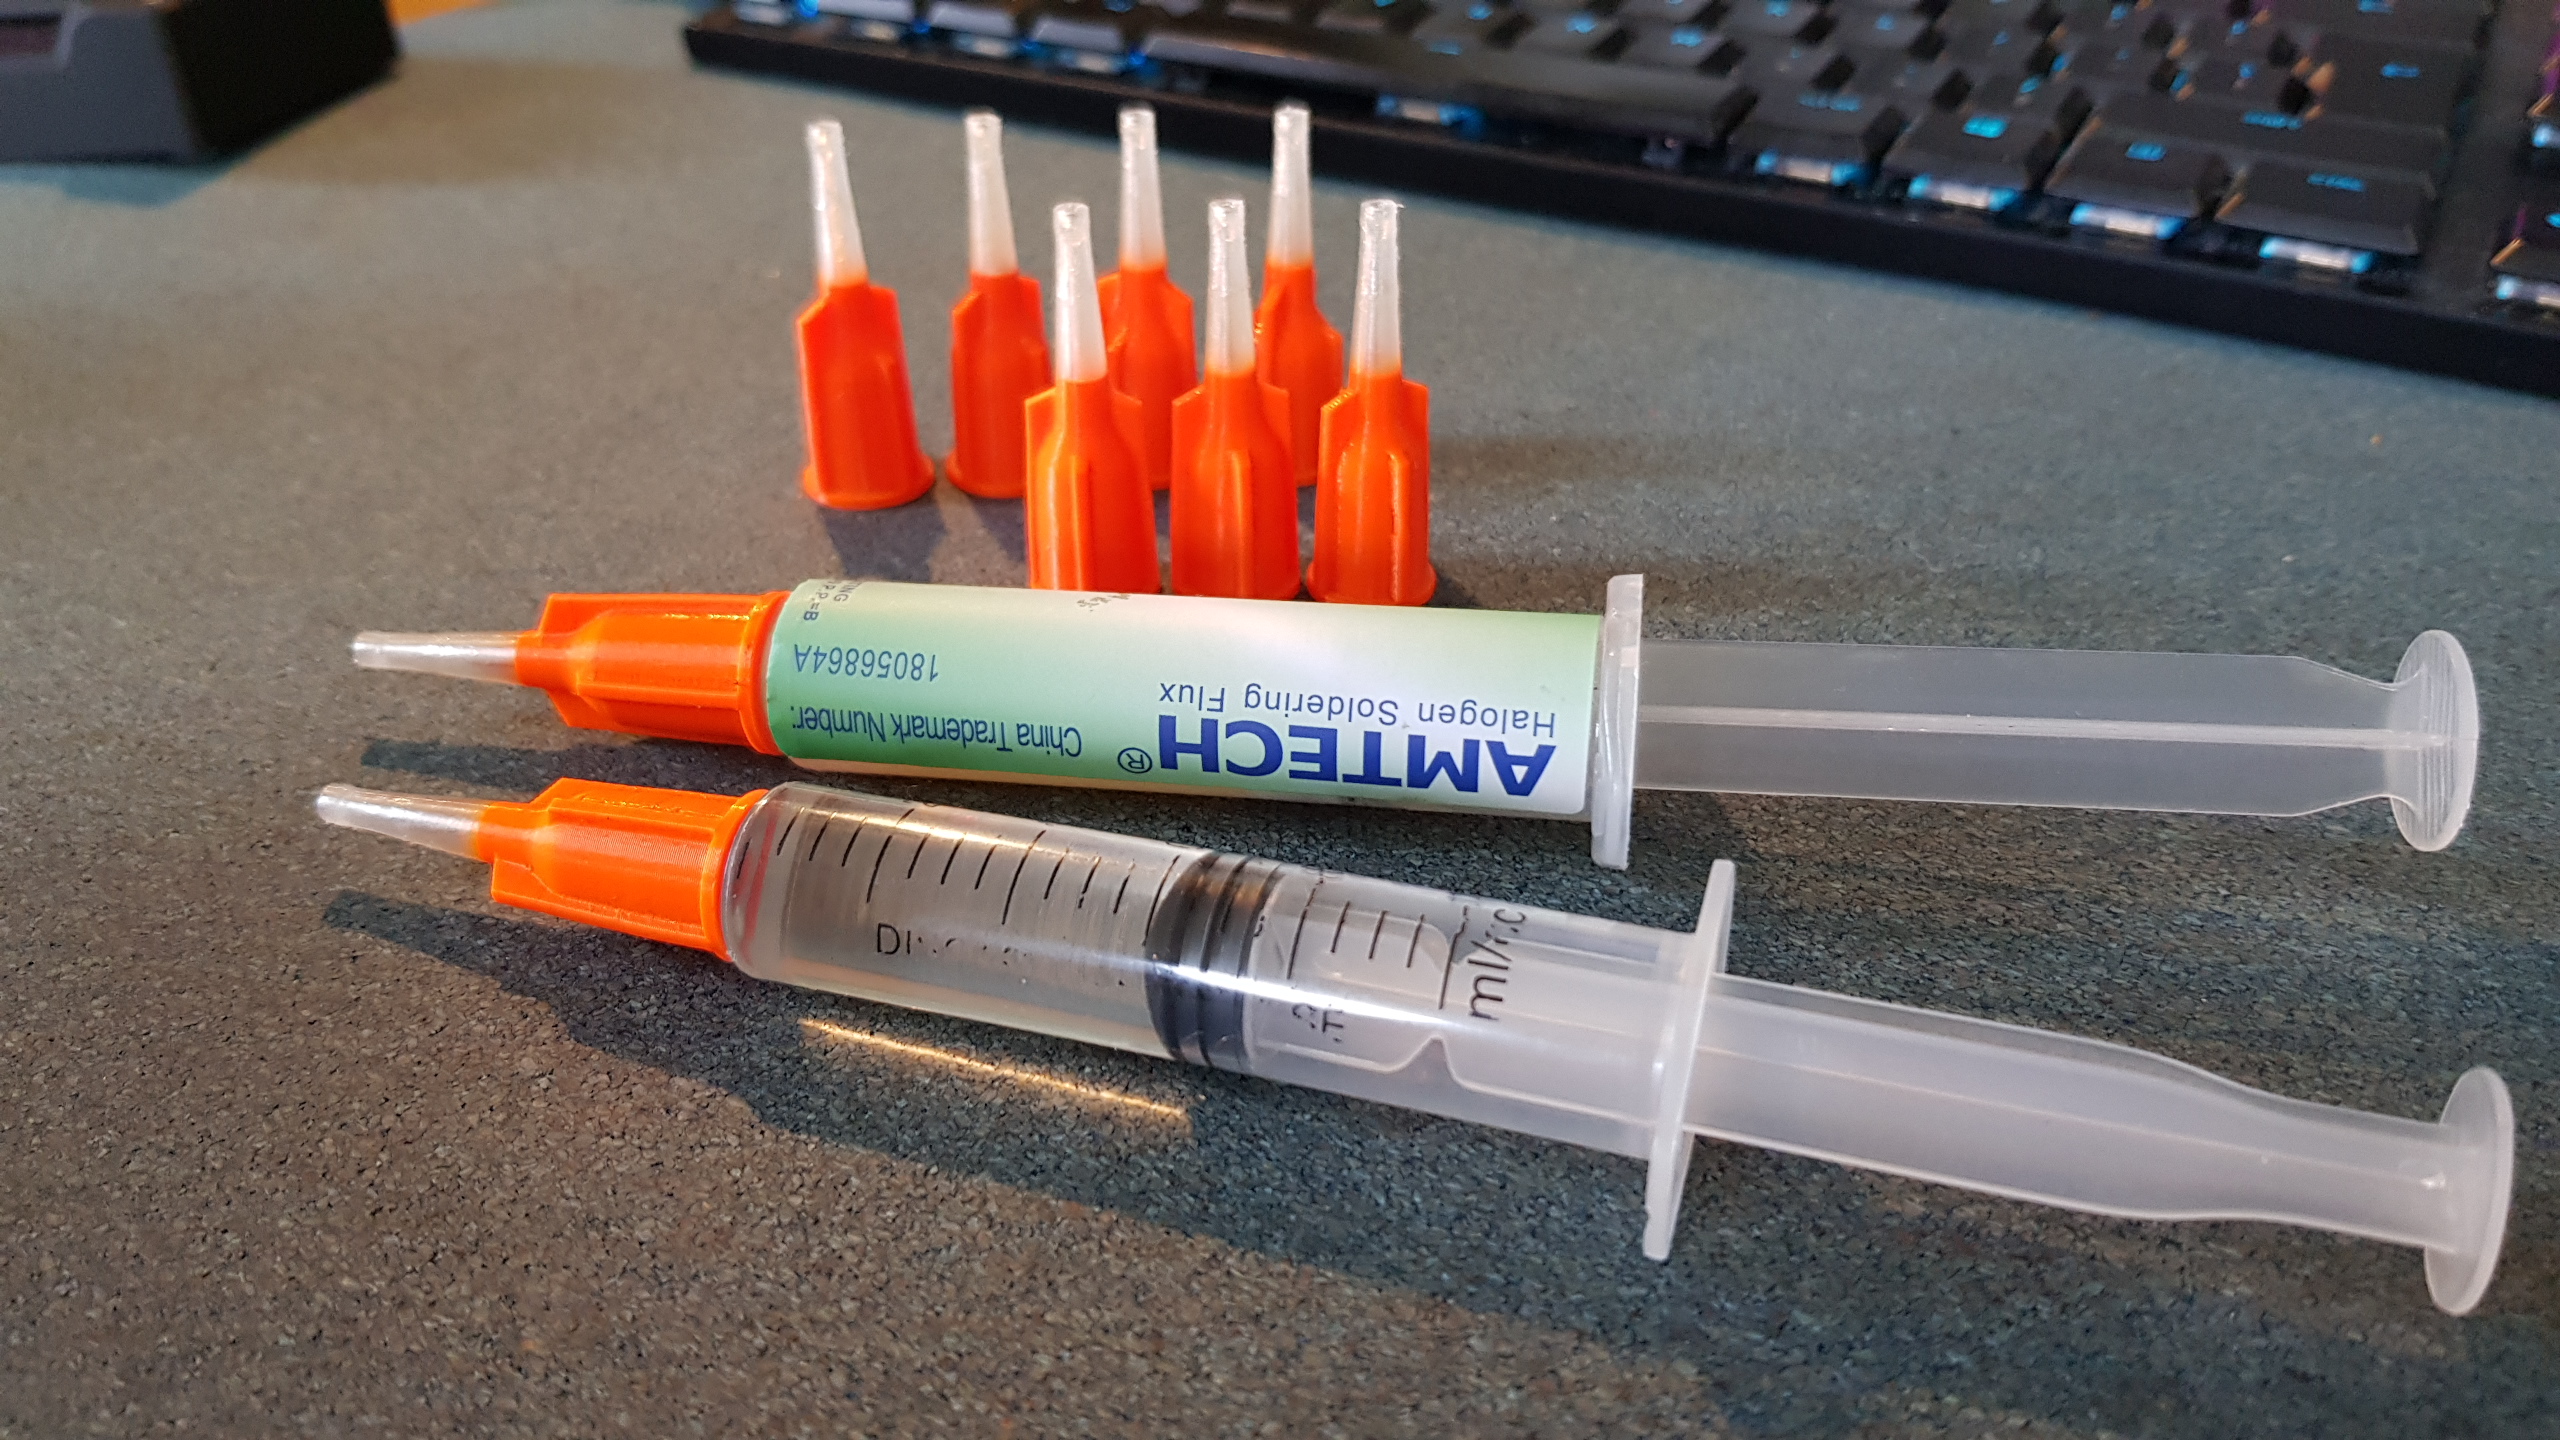 Needle / Syringe Caps